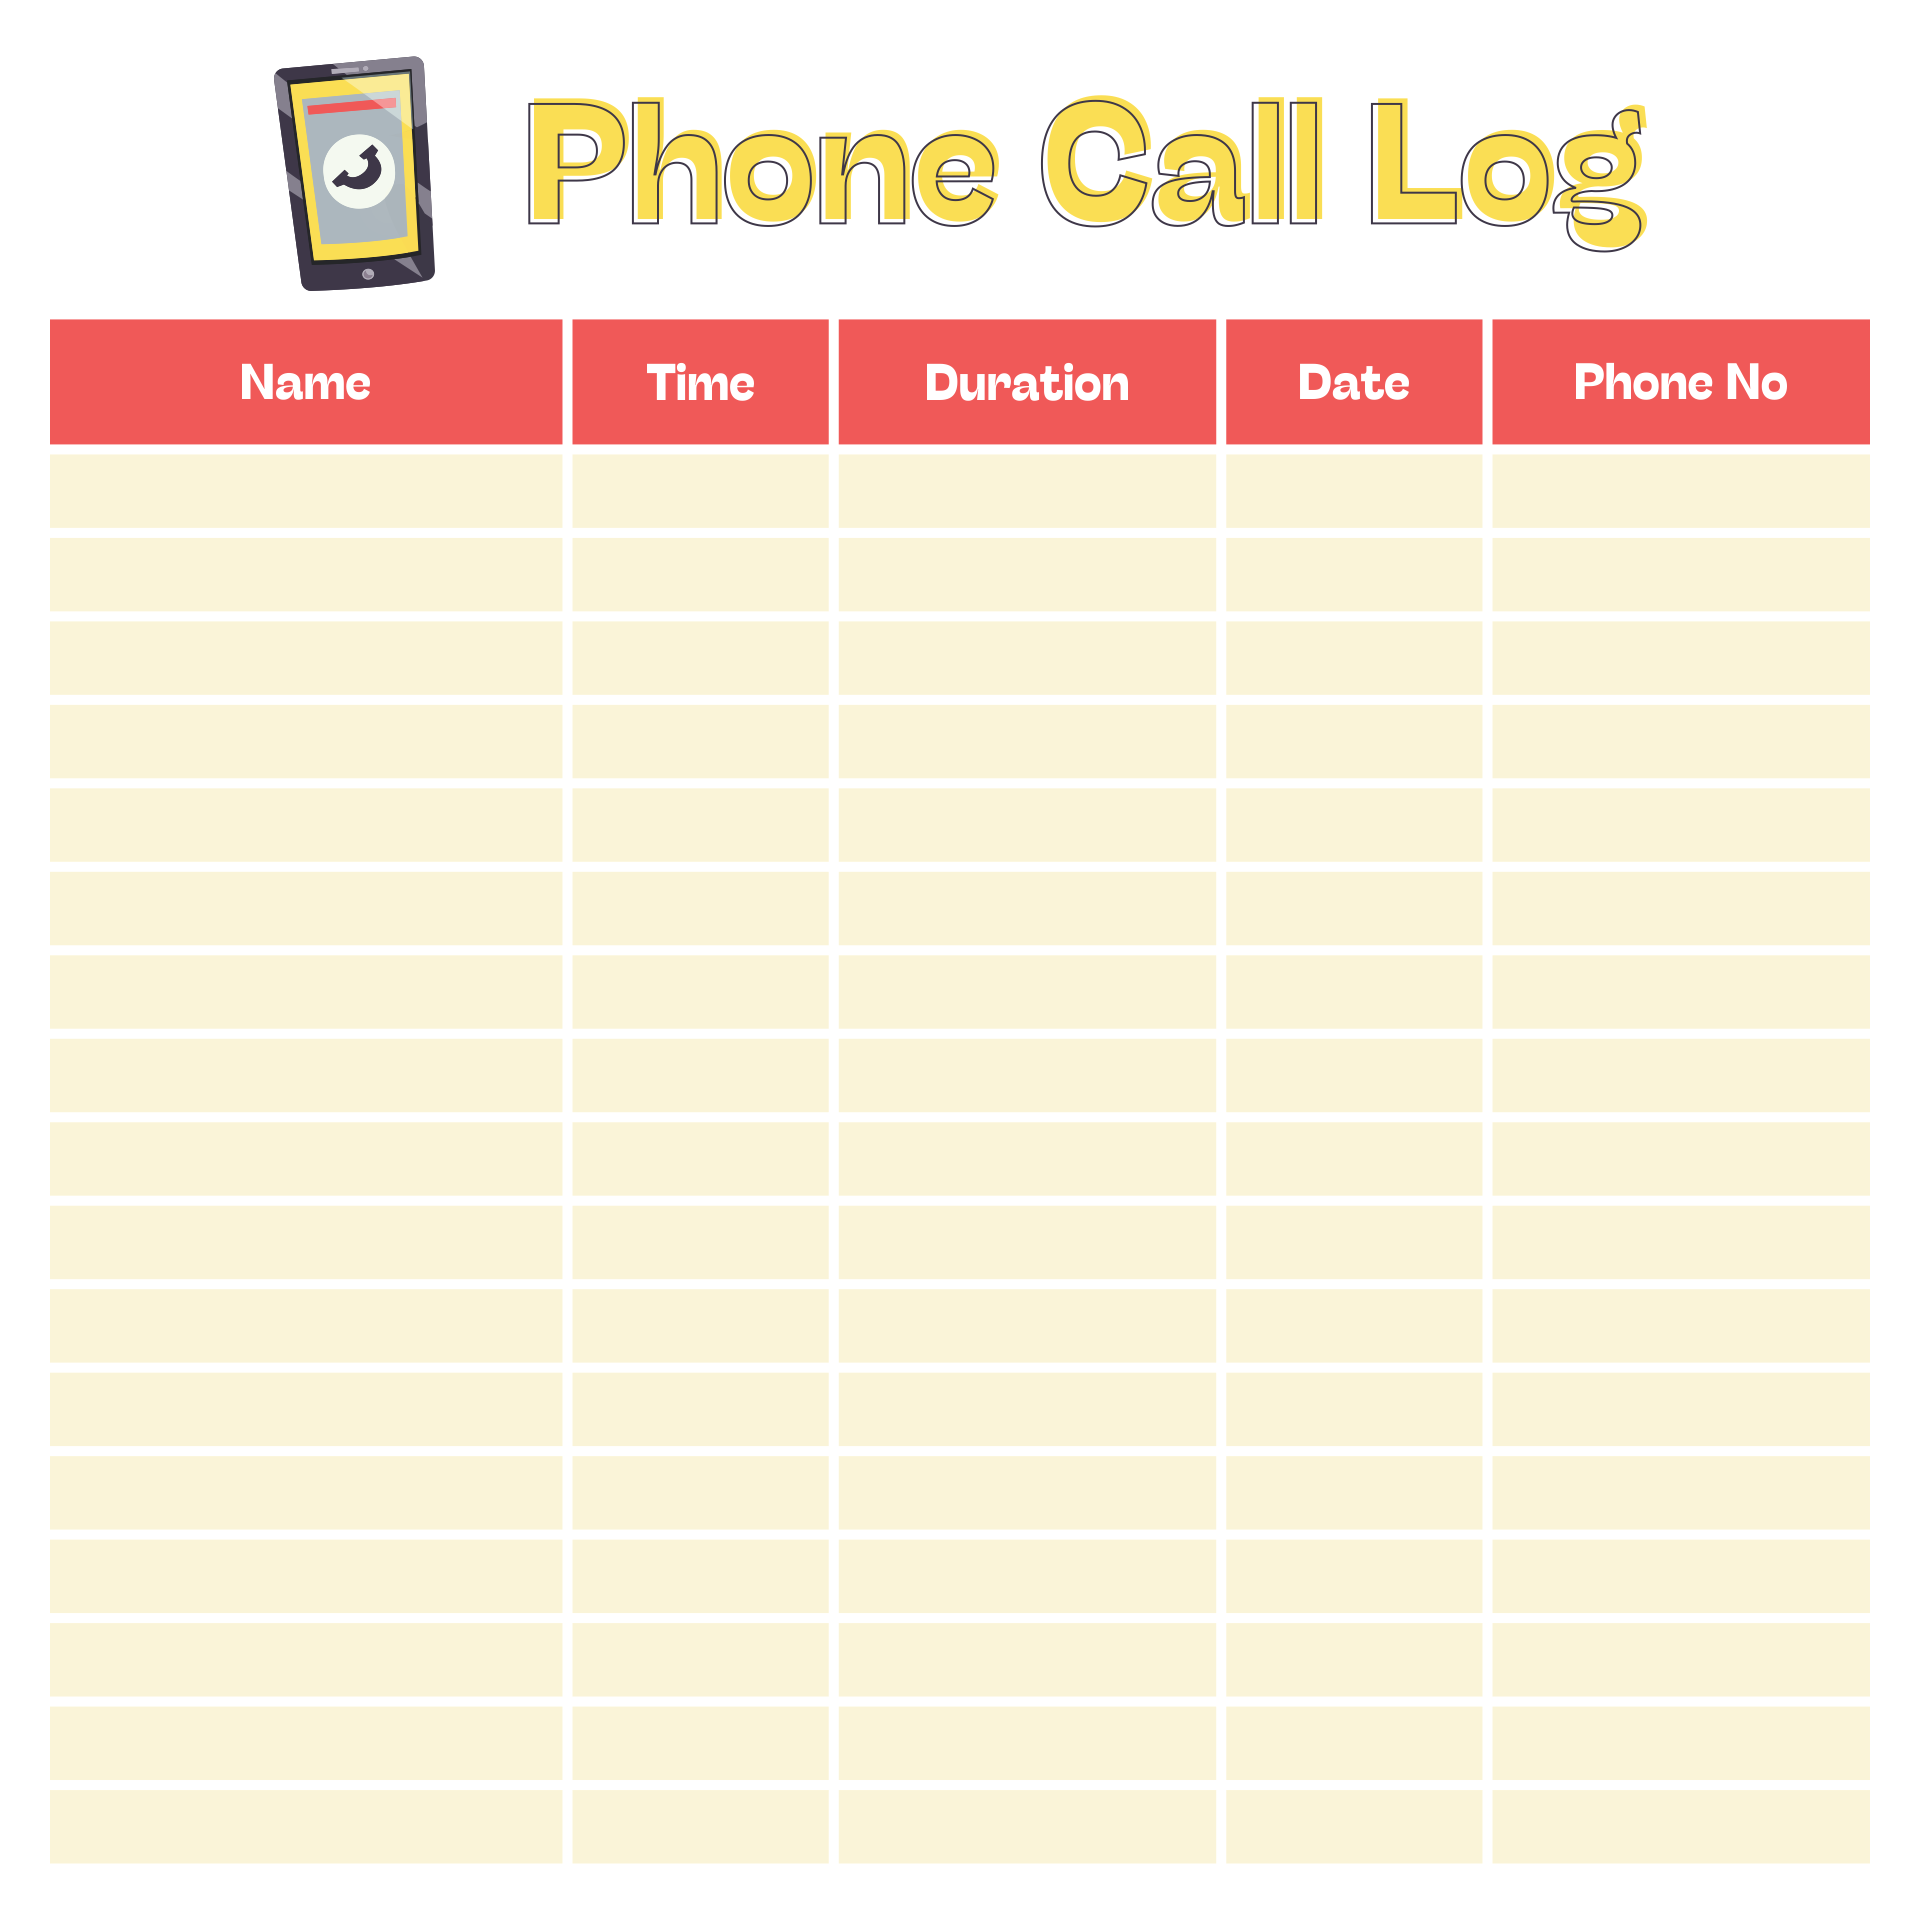 Phone Call Log Template